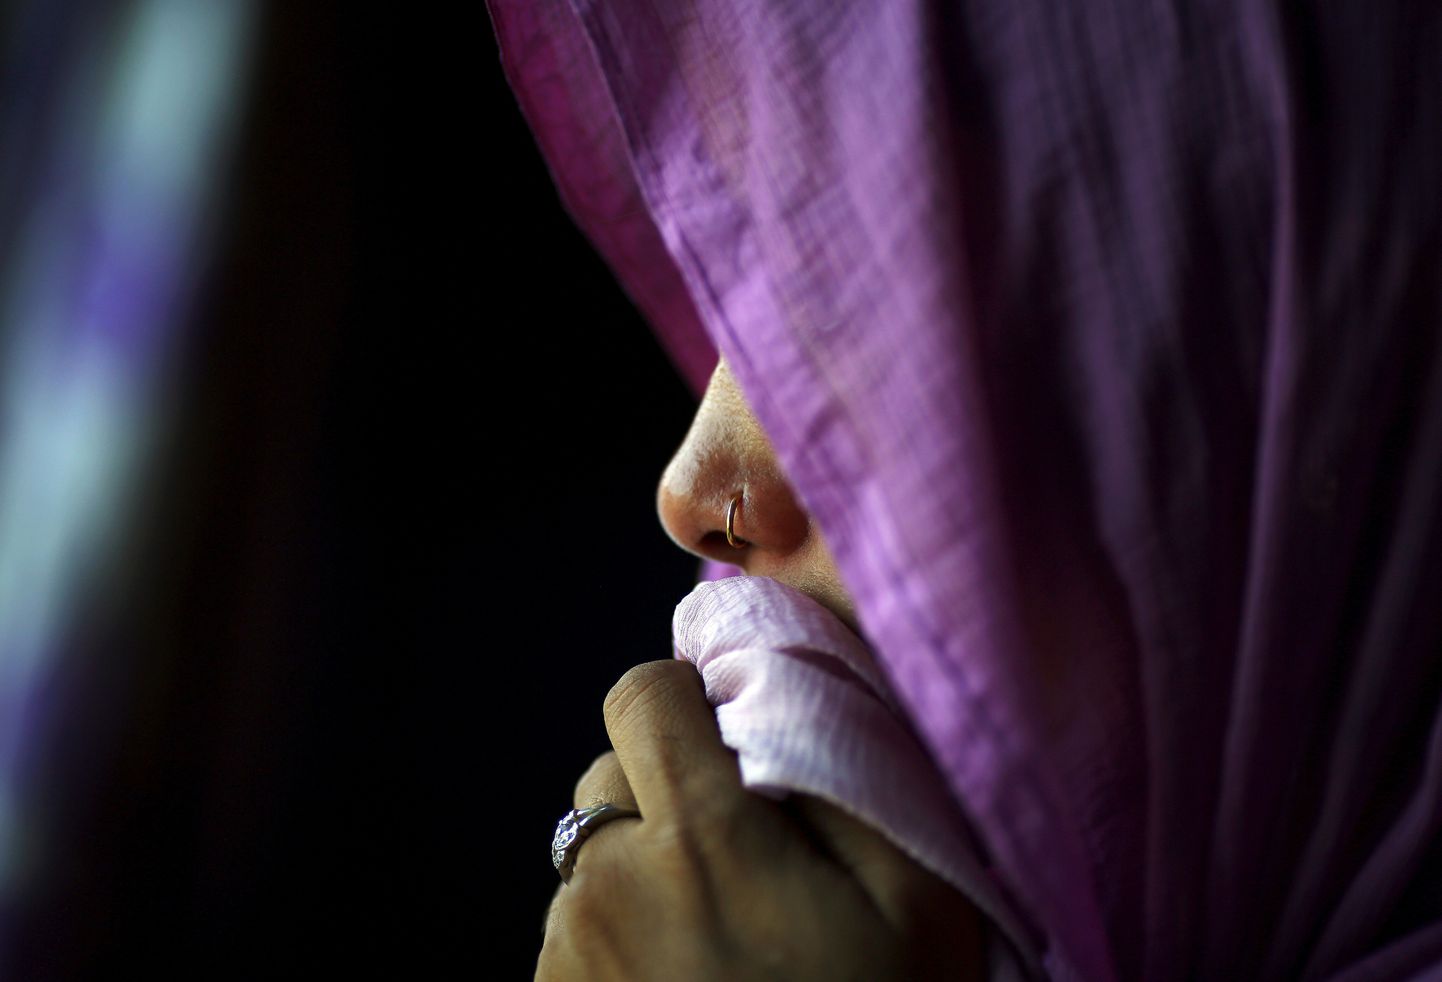 Согласно статистике, в 2015 году в Индии было совершено 94 тысячи преступлений в отношении детей. Почти 40 процентов этих случаев относятся к изнасилованиям и сексуальным домогательствам.